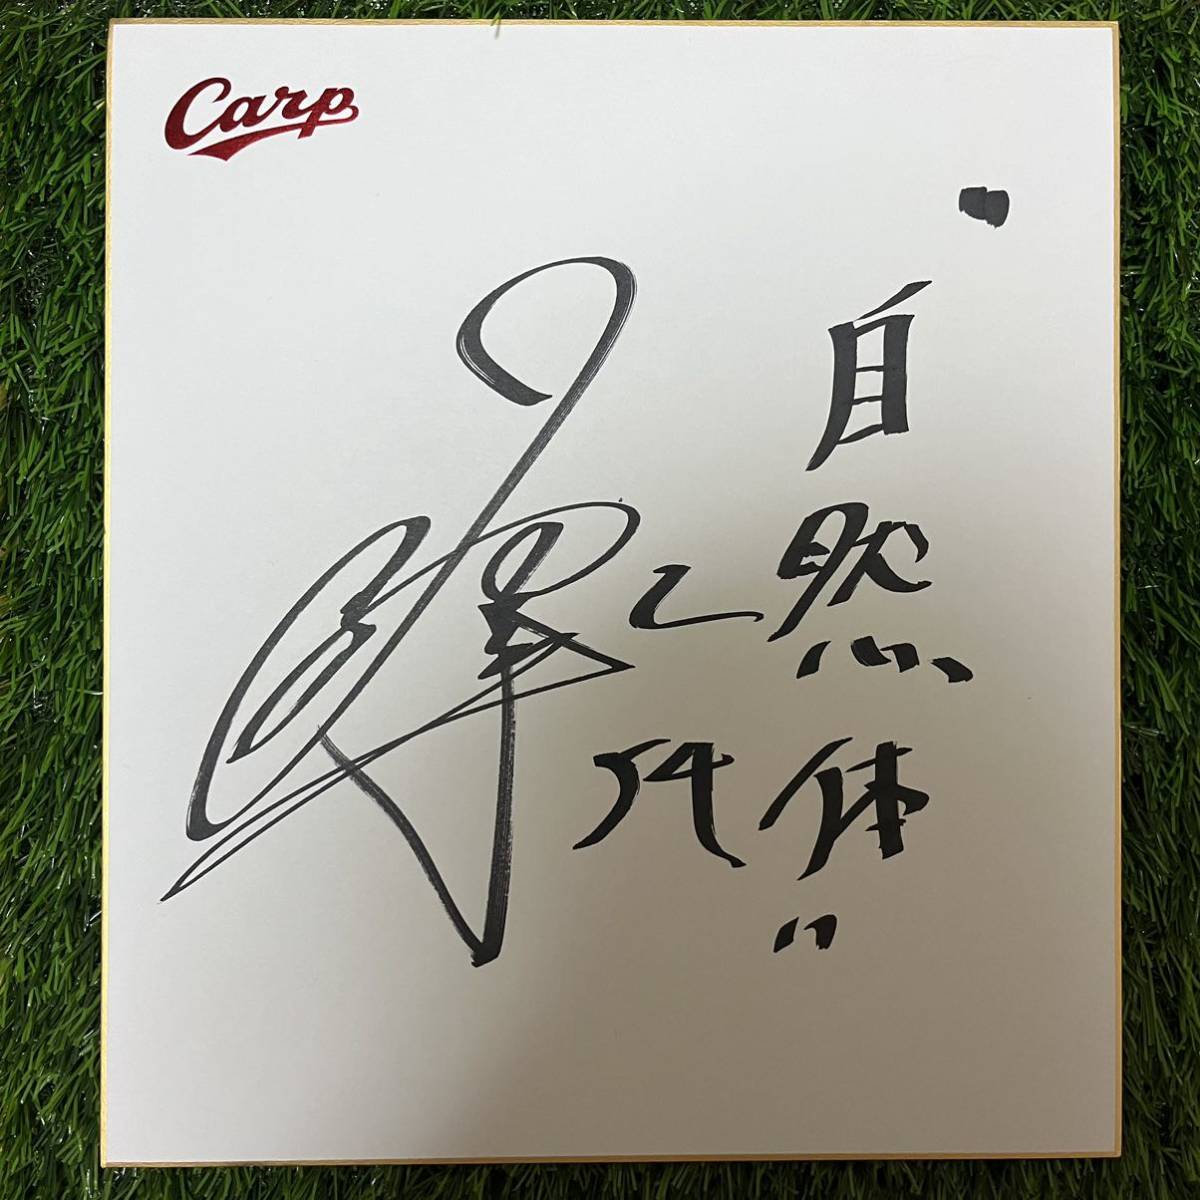 हिरोशिमा टोयो कार्प युया निरासावा #54 हस्ताक्षरयुक्त रंगीन कागज, बेसबॉल, यादगार, संबंधित सामान, संकेत